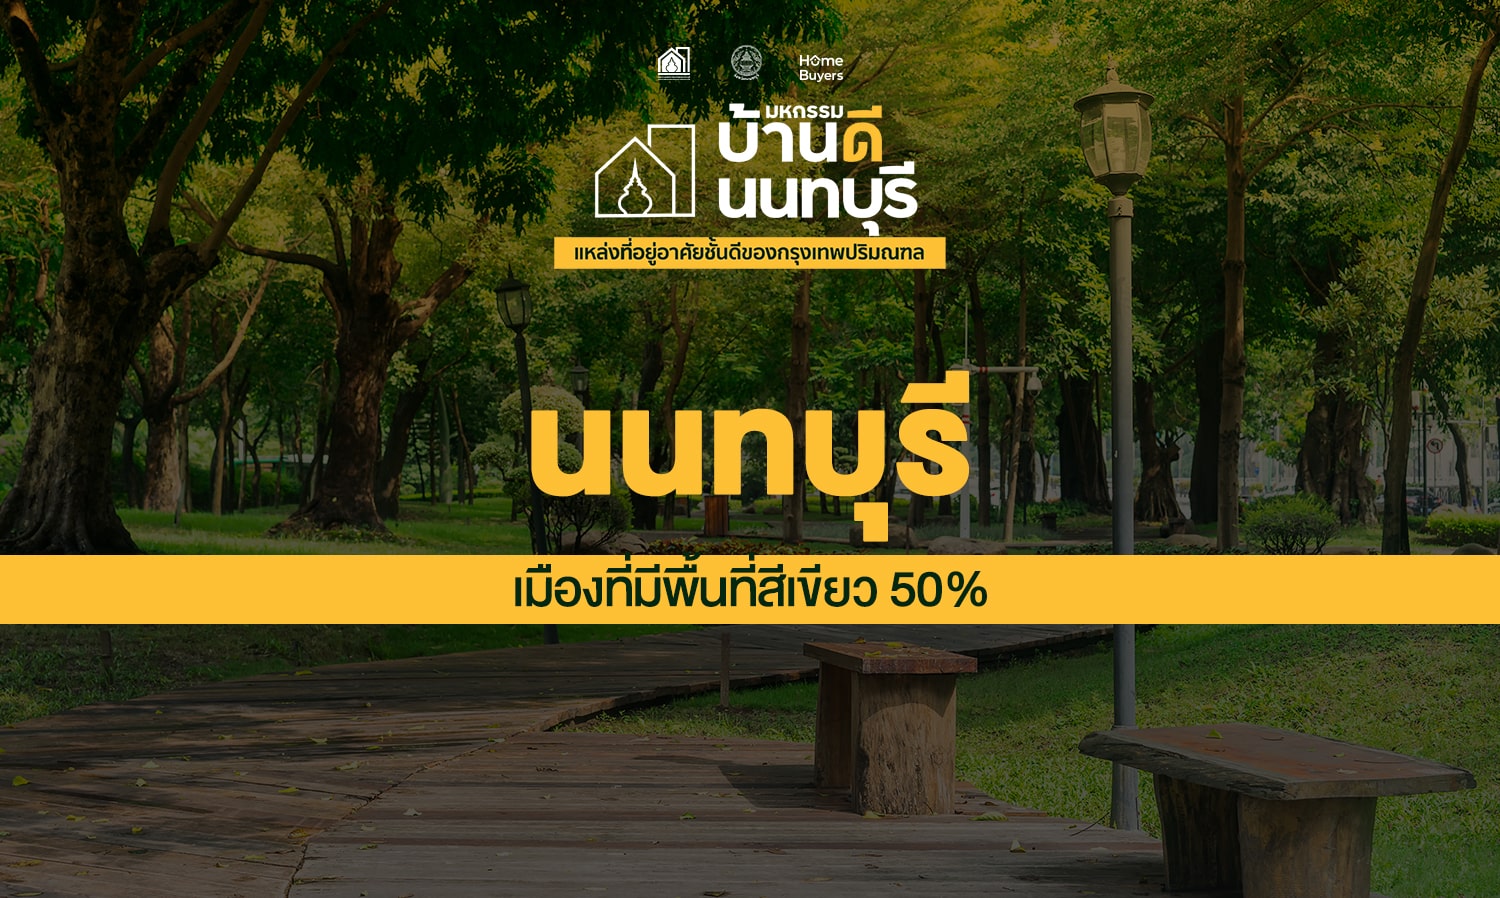 นนทบุรี เมืองที่มีการใช้ประโยชน์ที่ดินสีเขียวถึง 51.75% ของพื้นที่ทั้งหมด